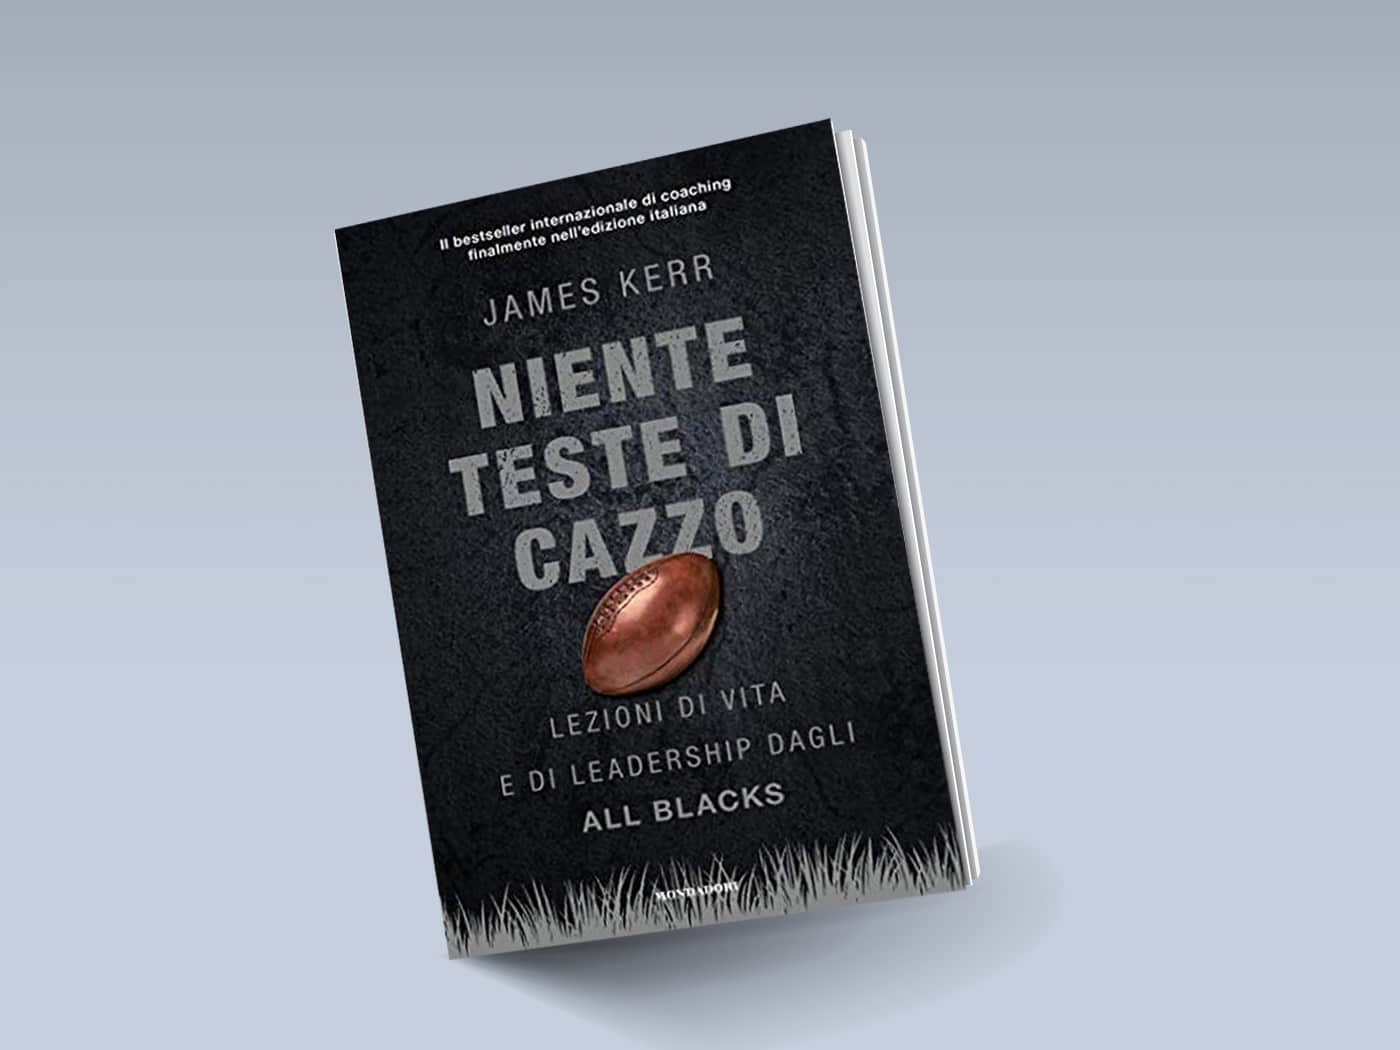 Niente teste di cazzo. Lezioni di vita e di leadership dagli All Blacks -  James Kerr - Libro Mondadori 2020, Oscar bestsellers open